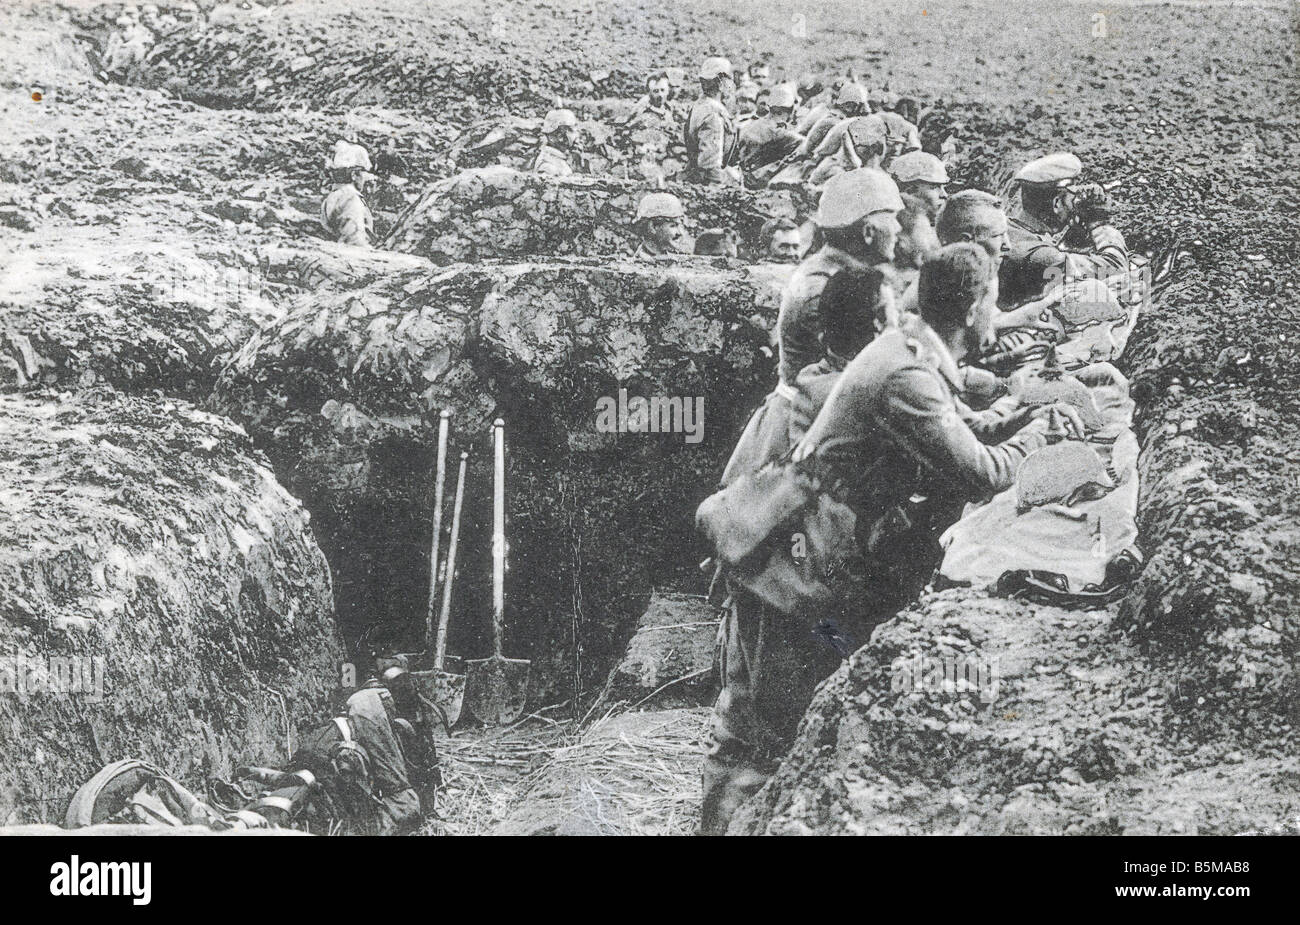 2 G55 W1 1916 13 WWI Beobachtungsposten trench 1916 Geschichte WWI westlichen Front Grabenkriegsführung deutsche Soldaten in ein Graben beobachten Stockfoto